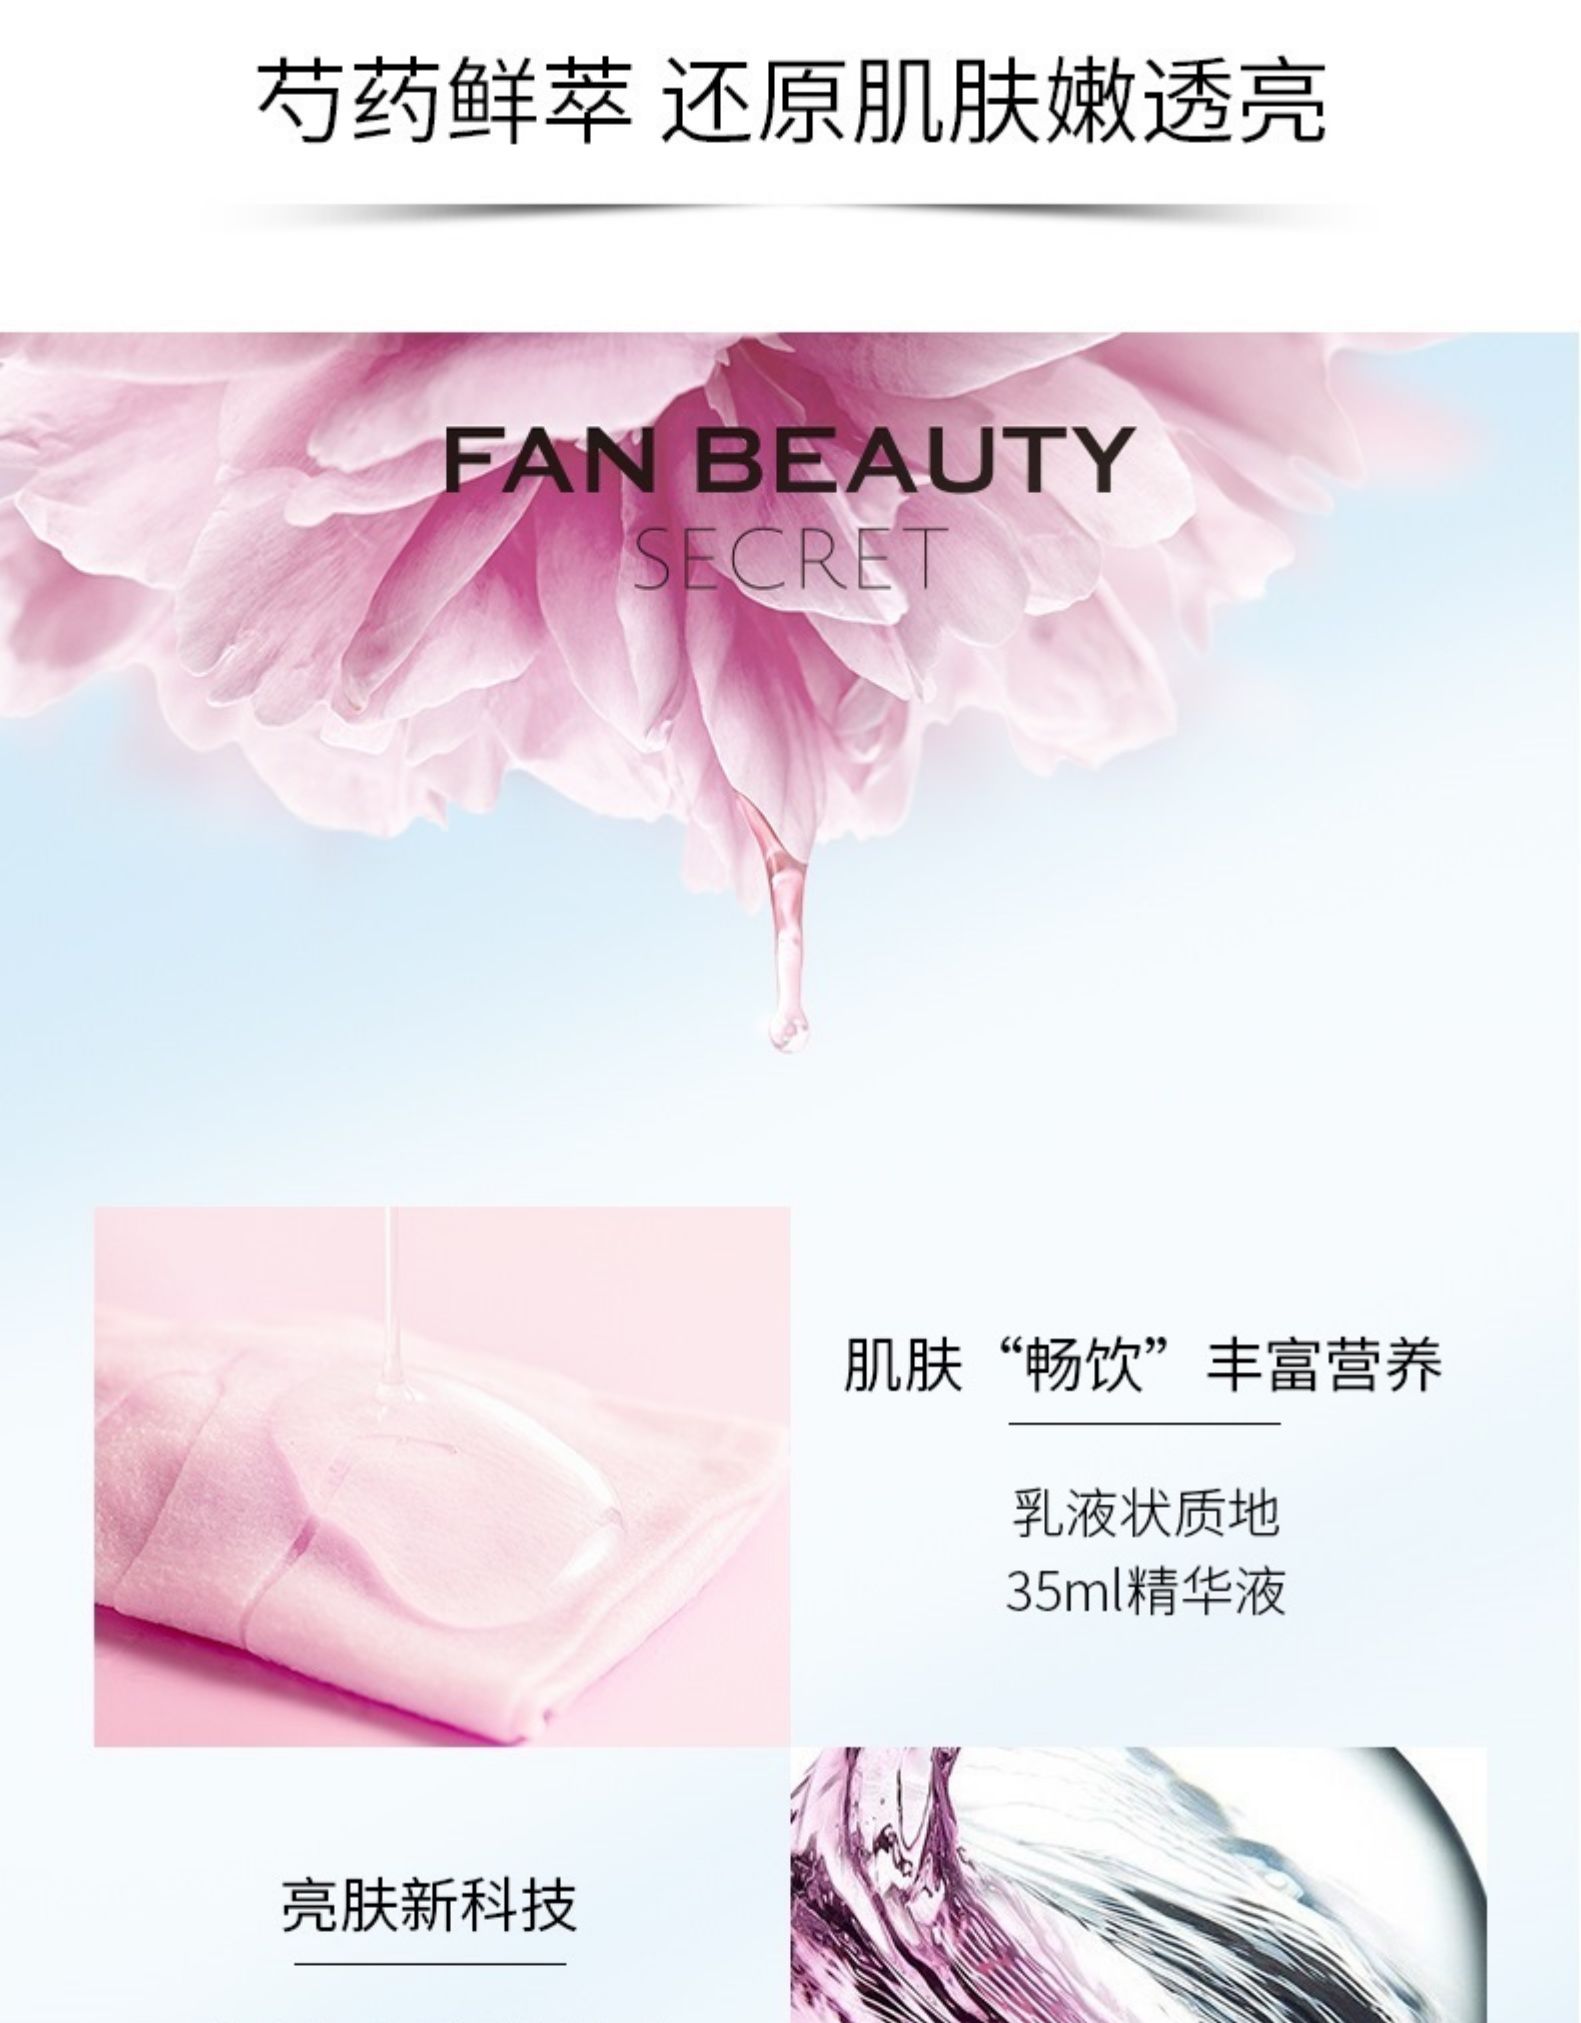 中國FANBEAUTY SECRET 范冰冰自創品牌 芍藥粉光美肌面膜補水 單盒5片裝